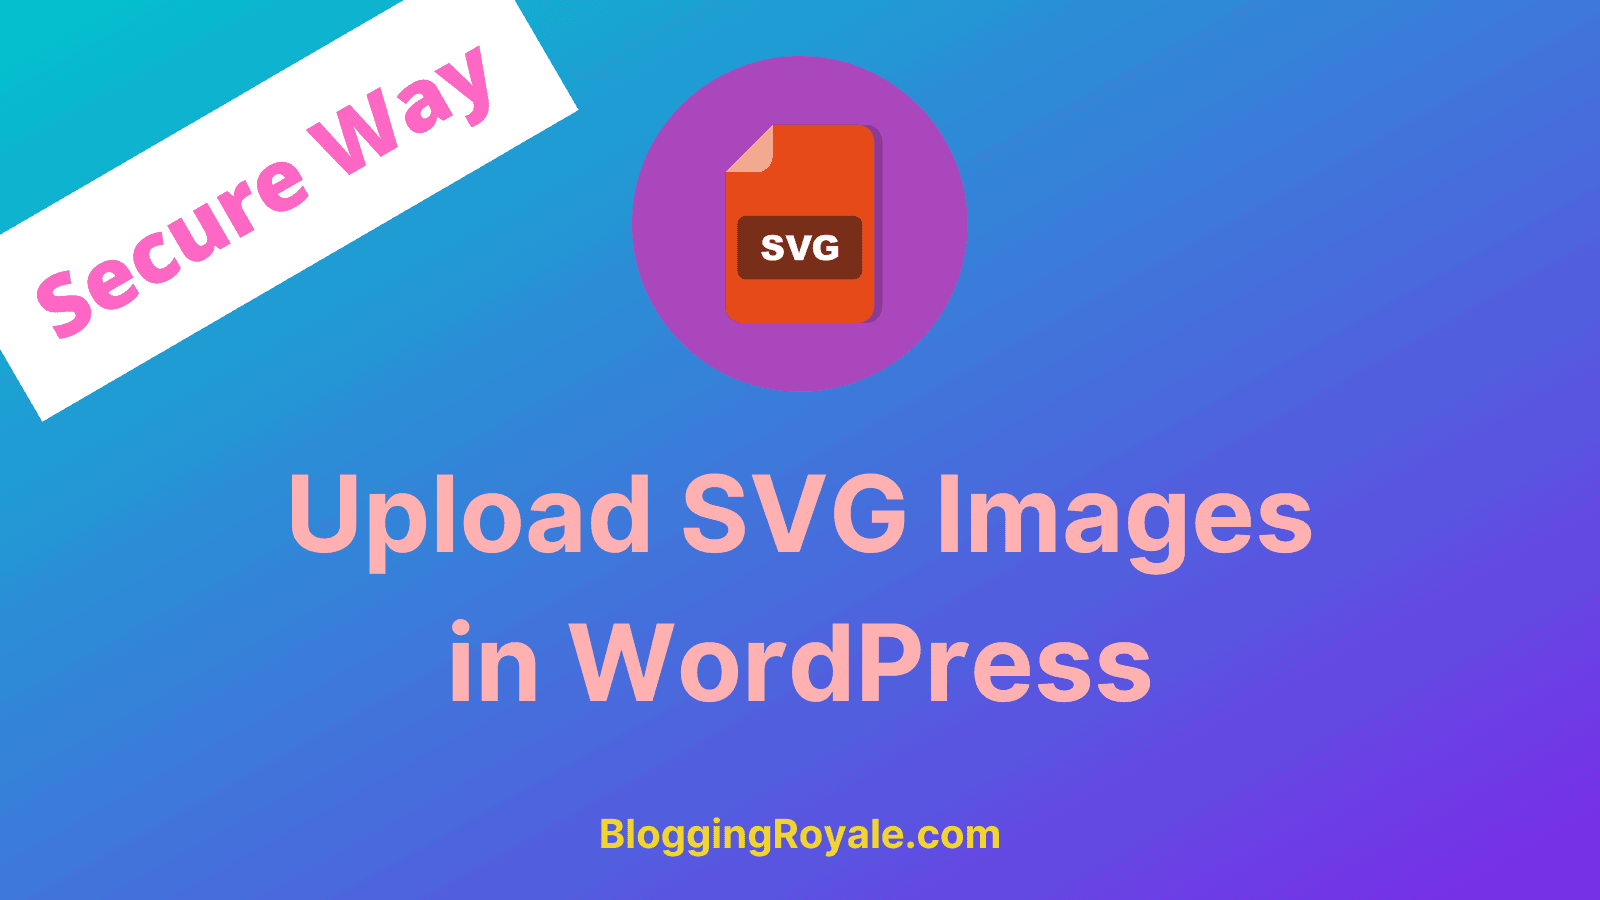 Upload SVG Images in WordPress